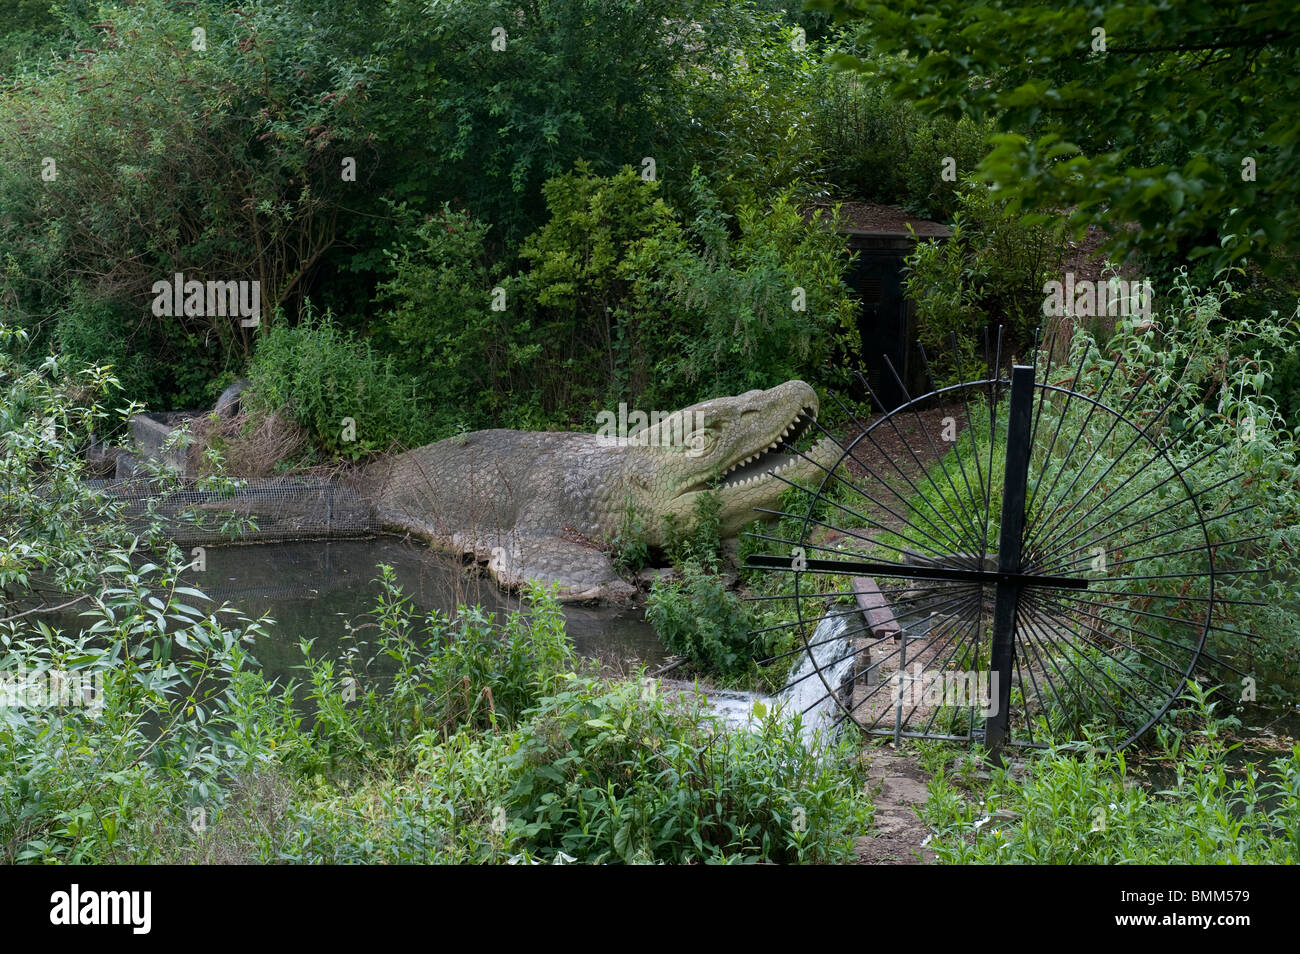 Modello di dinosauri in Crystal Palace Park, London, Regno Unito Foto Stock